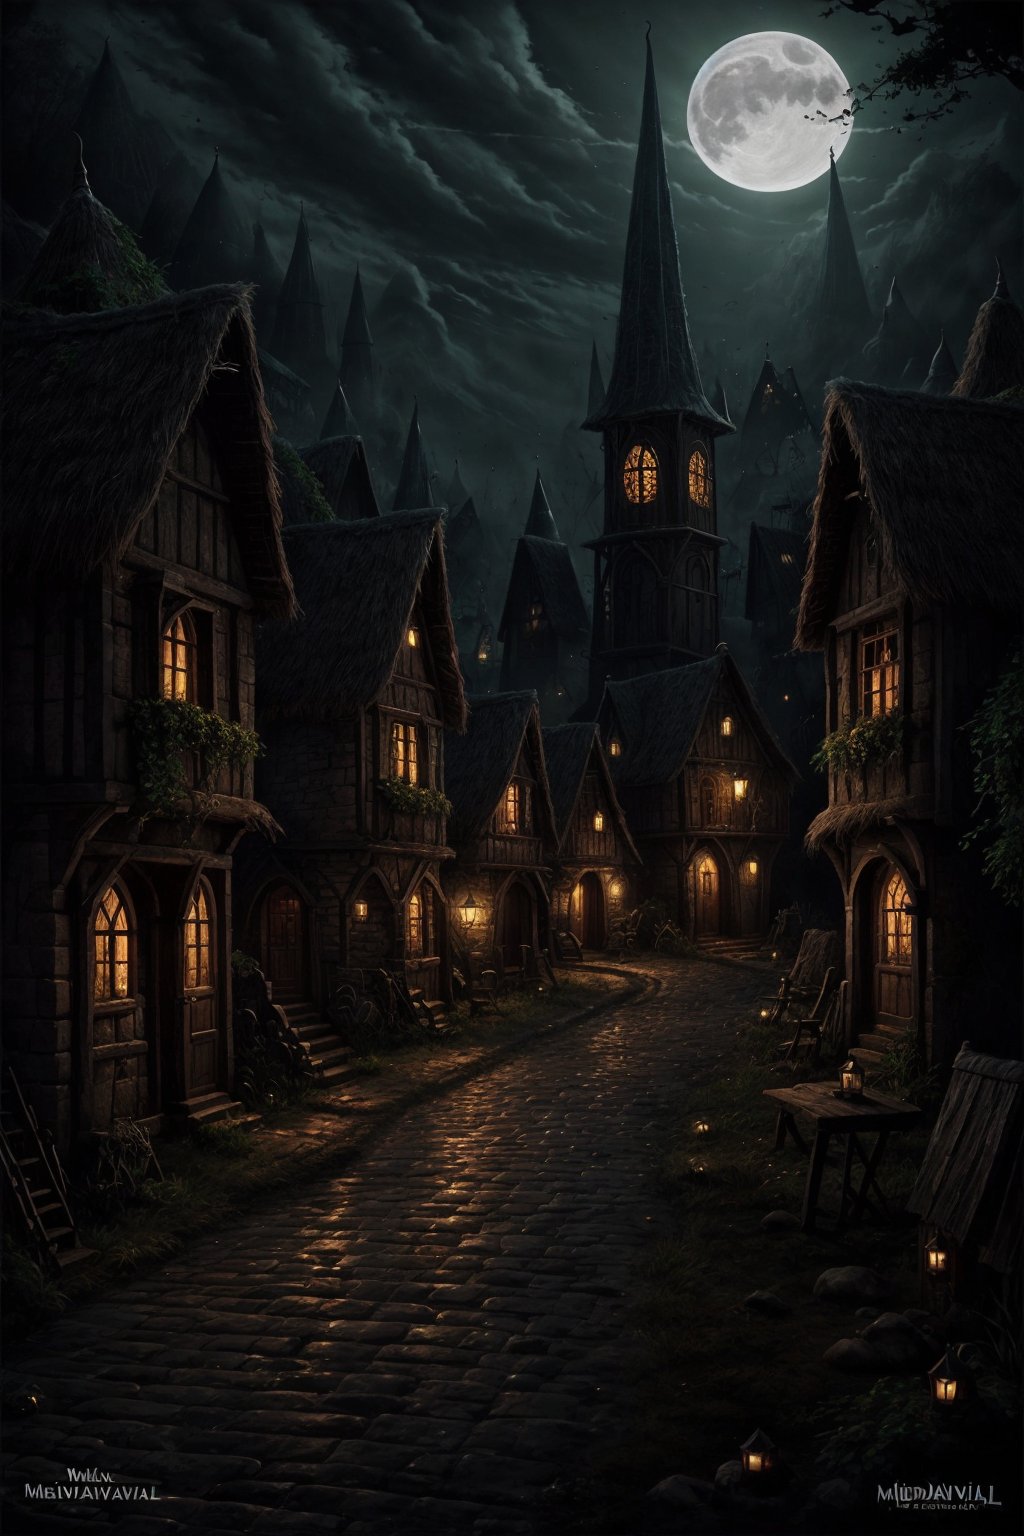 Dark_Mediaval,, no_humans, village, night, outdoor, mediaval, fantasy